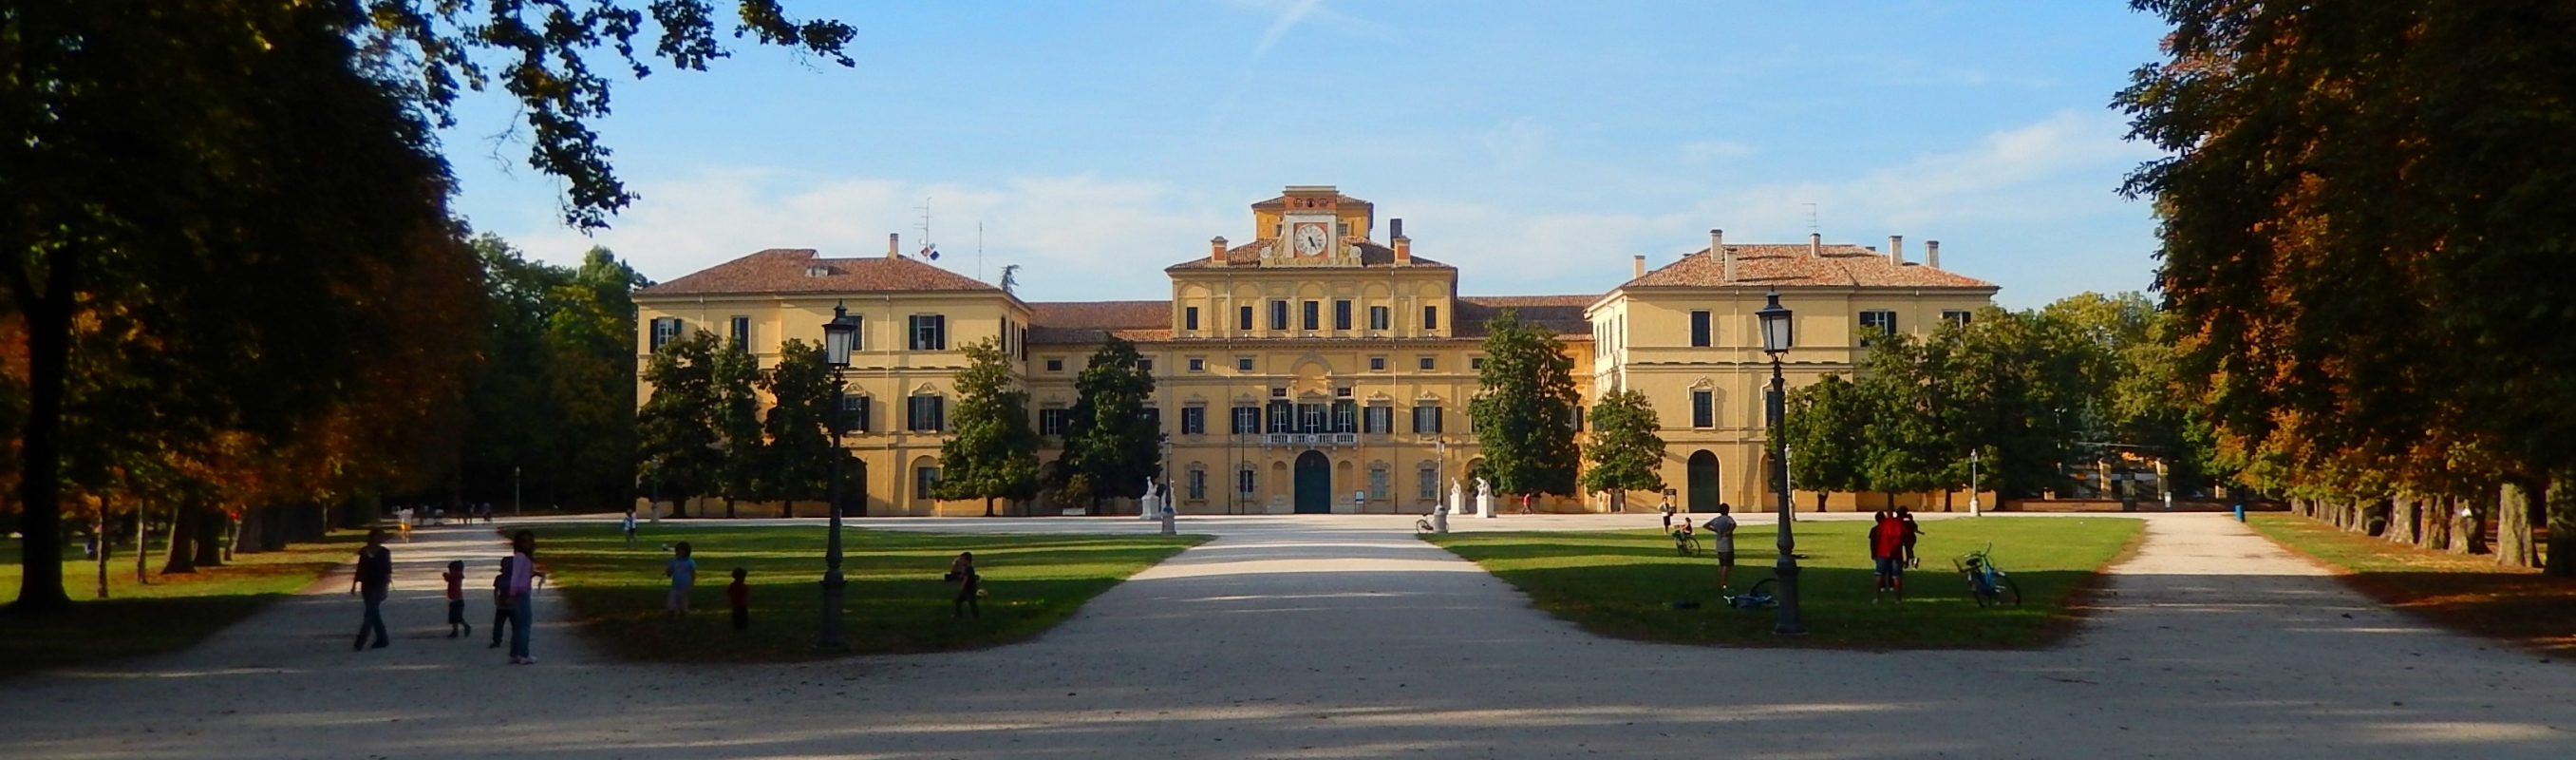 Palazzo Ducale in settembre - Luca Fornasari